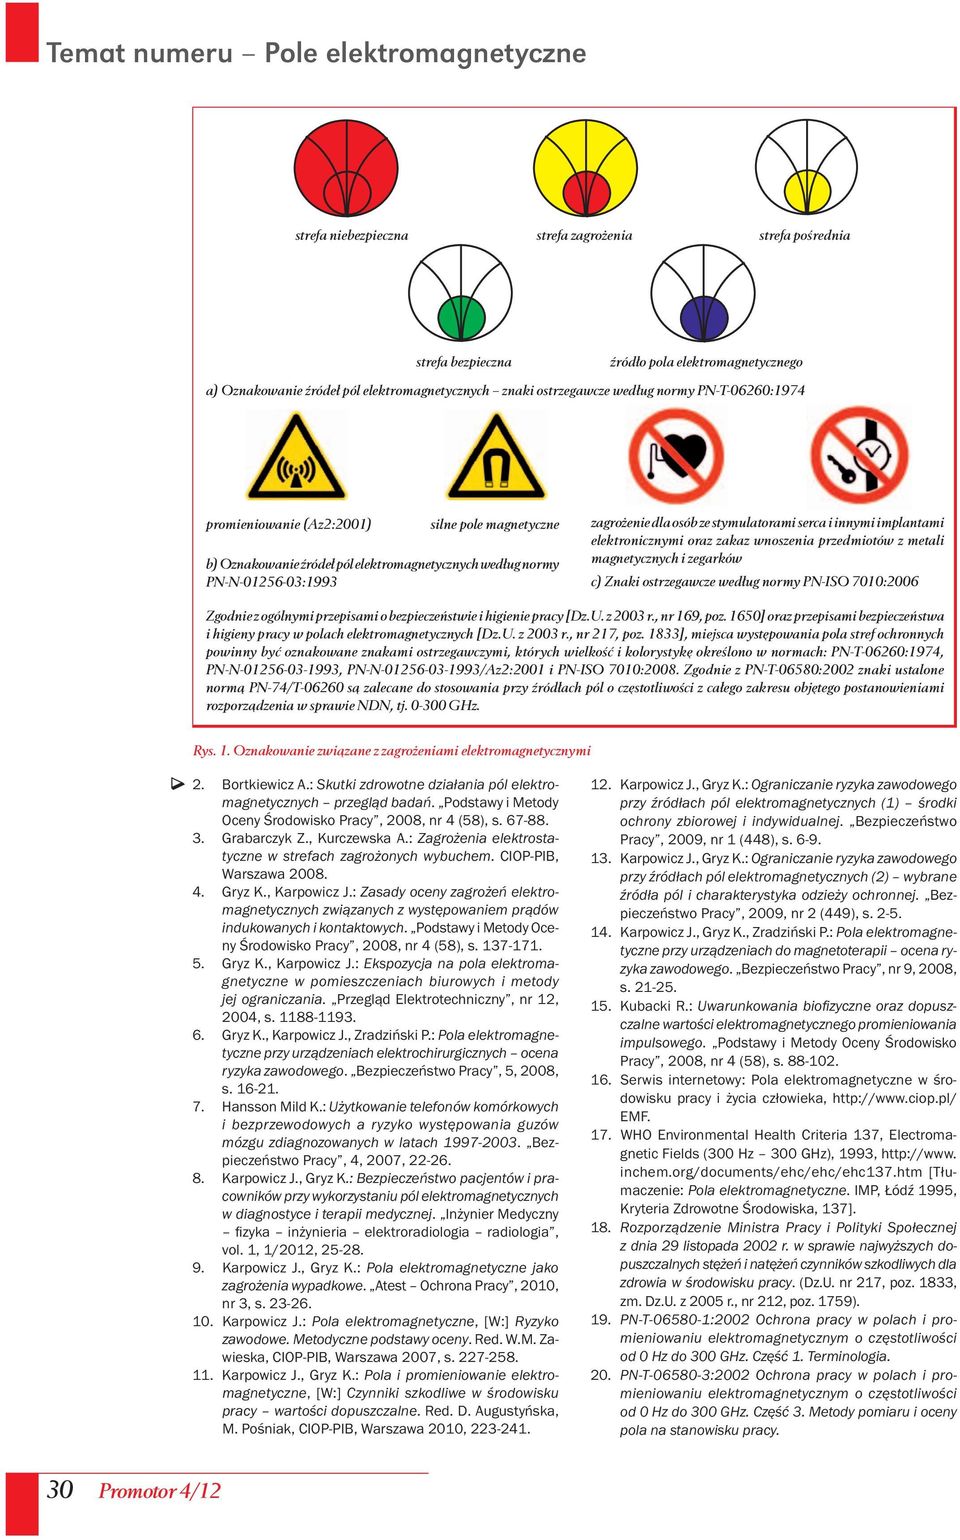 implantami elektronicznymi oraz zakaz wnoszenia przedmiotów z metali magnetycznych i zegarków c) Znaki ostrzegawcze według normy PN-ISO 7010:2006 Zgodnie z ogólnymi przepisami o bezpieczeństwie i